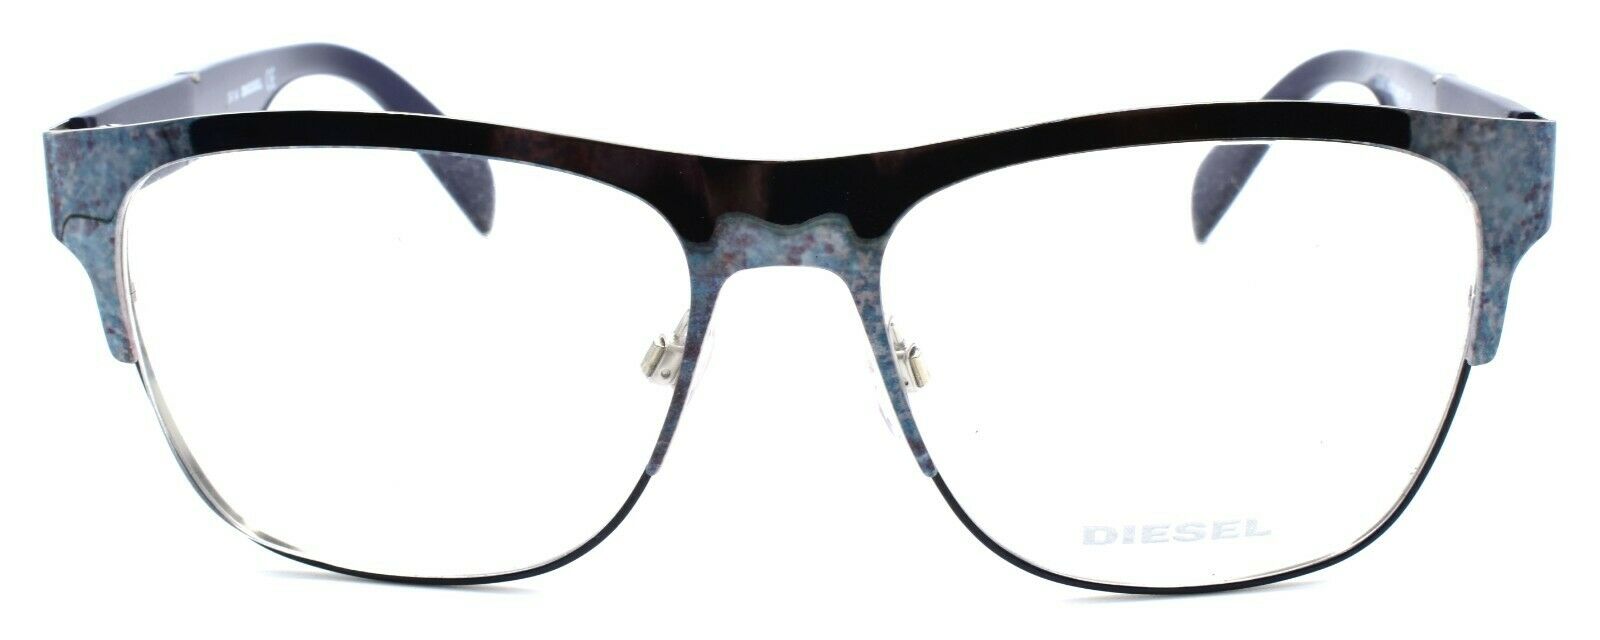 2-Diesel DL5094 092 Men's Eyeglasses Frames 55-16-145 Tarnished Blue-664689632558-IKSpecs